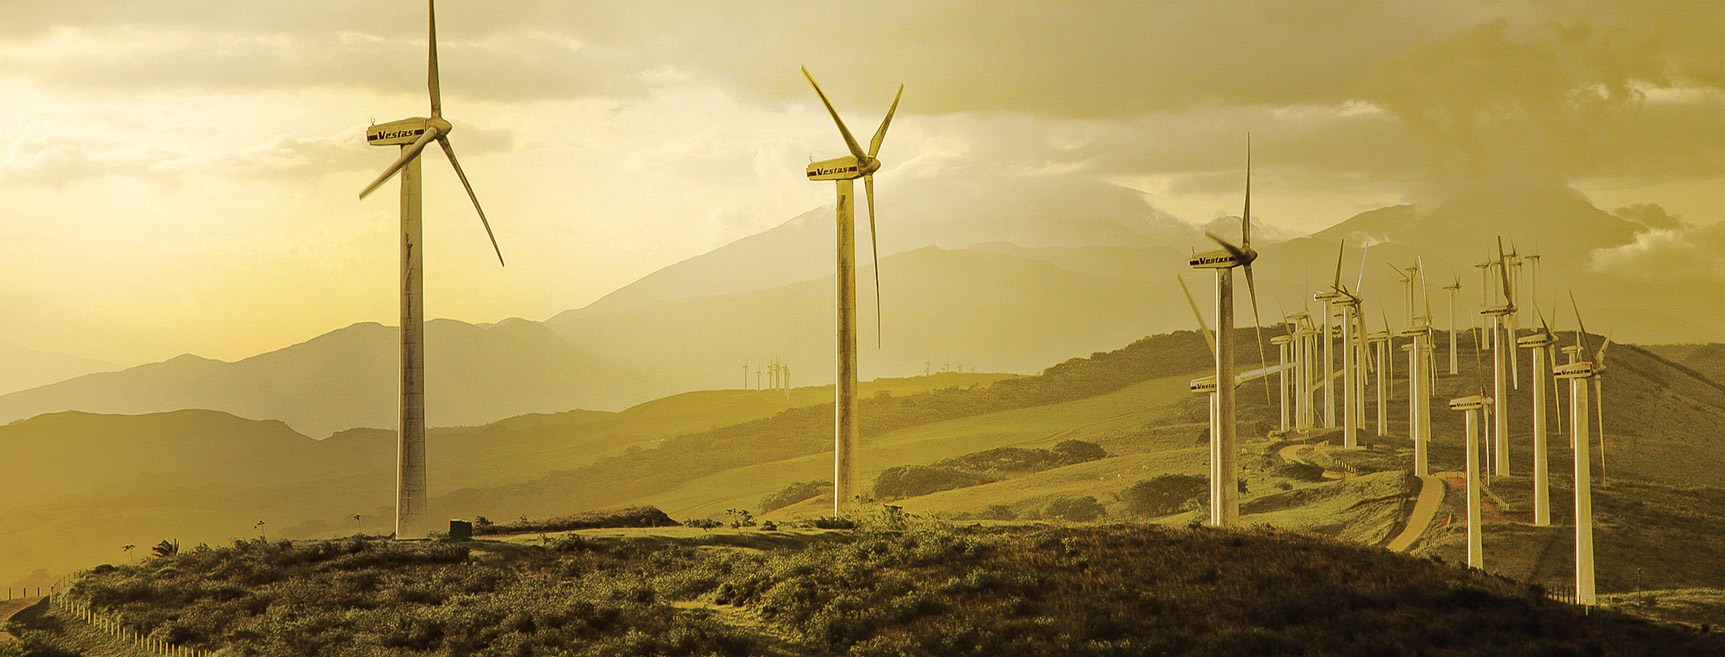 Parque eólico Costa Rica energía limpia y renovable